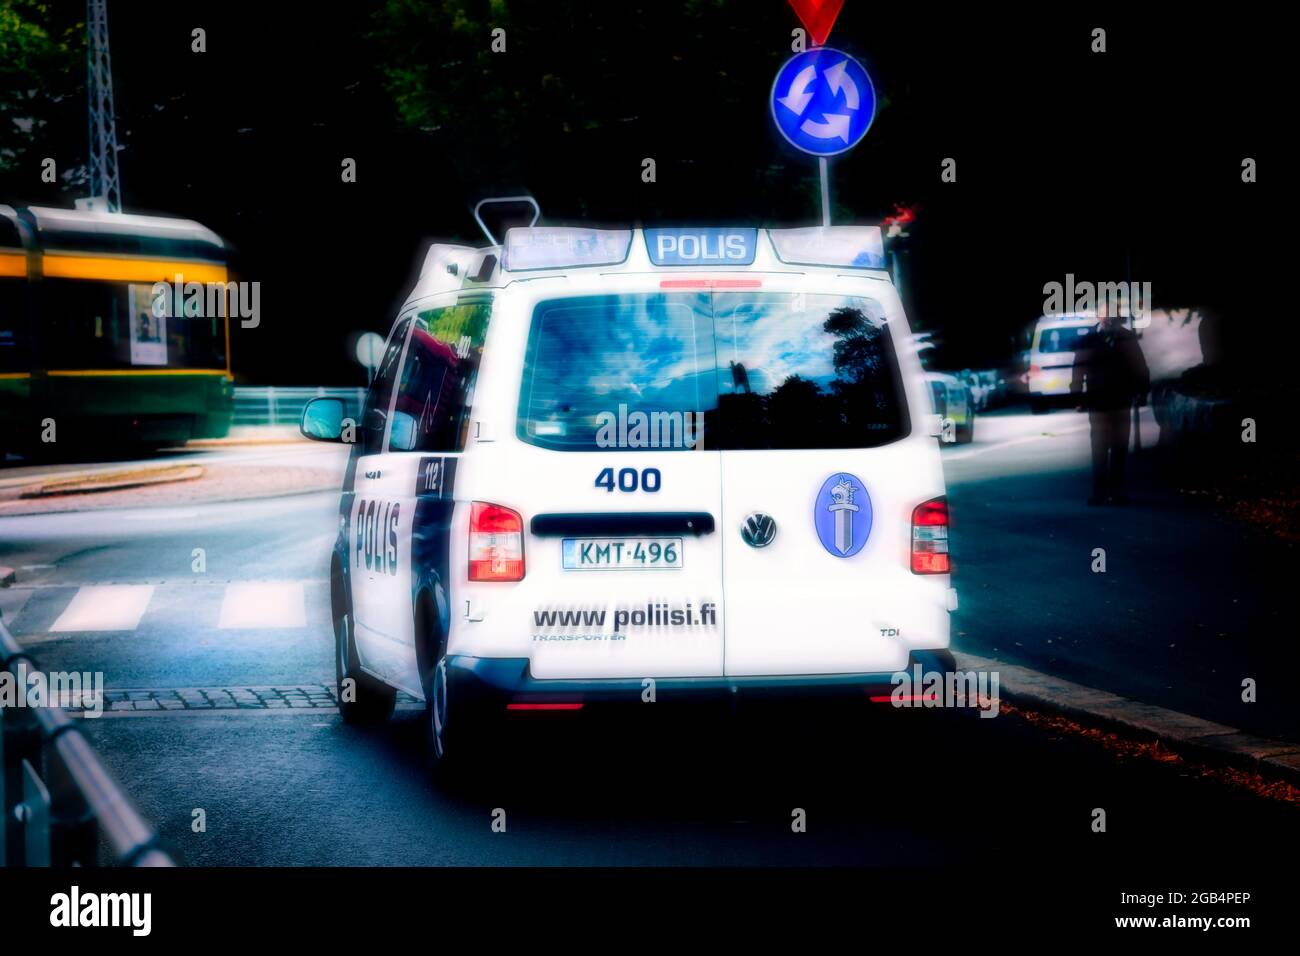 Volkswagen Transporter Police Vehicle a velocidad en la calle, movimiento desenfocado, imagen editorial ilustrativa. Foto de stock